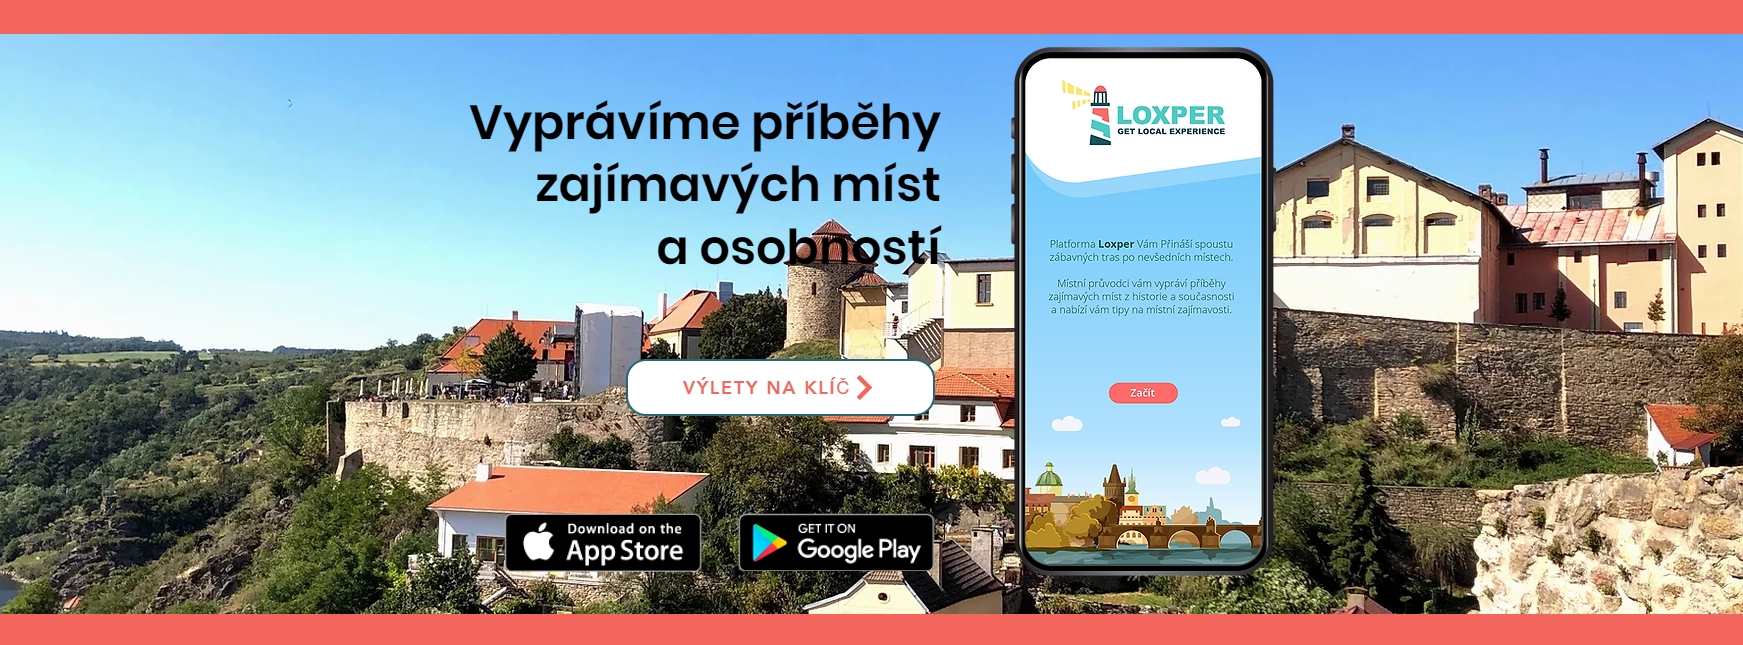 Aplikace Loxper vás rozpohybuje, vzdělá a pomůže poznat krásy České republiky